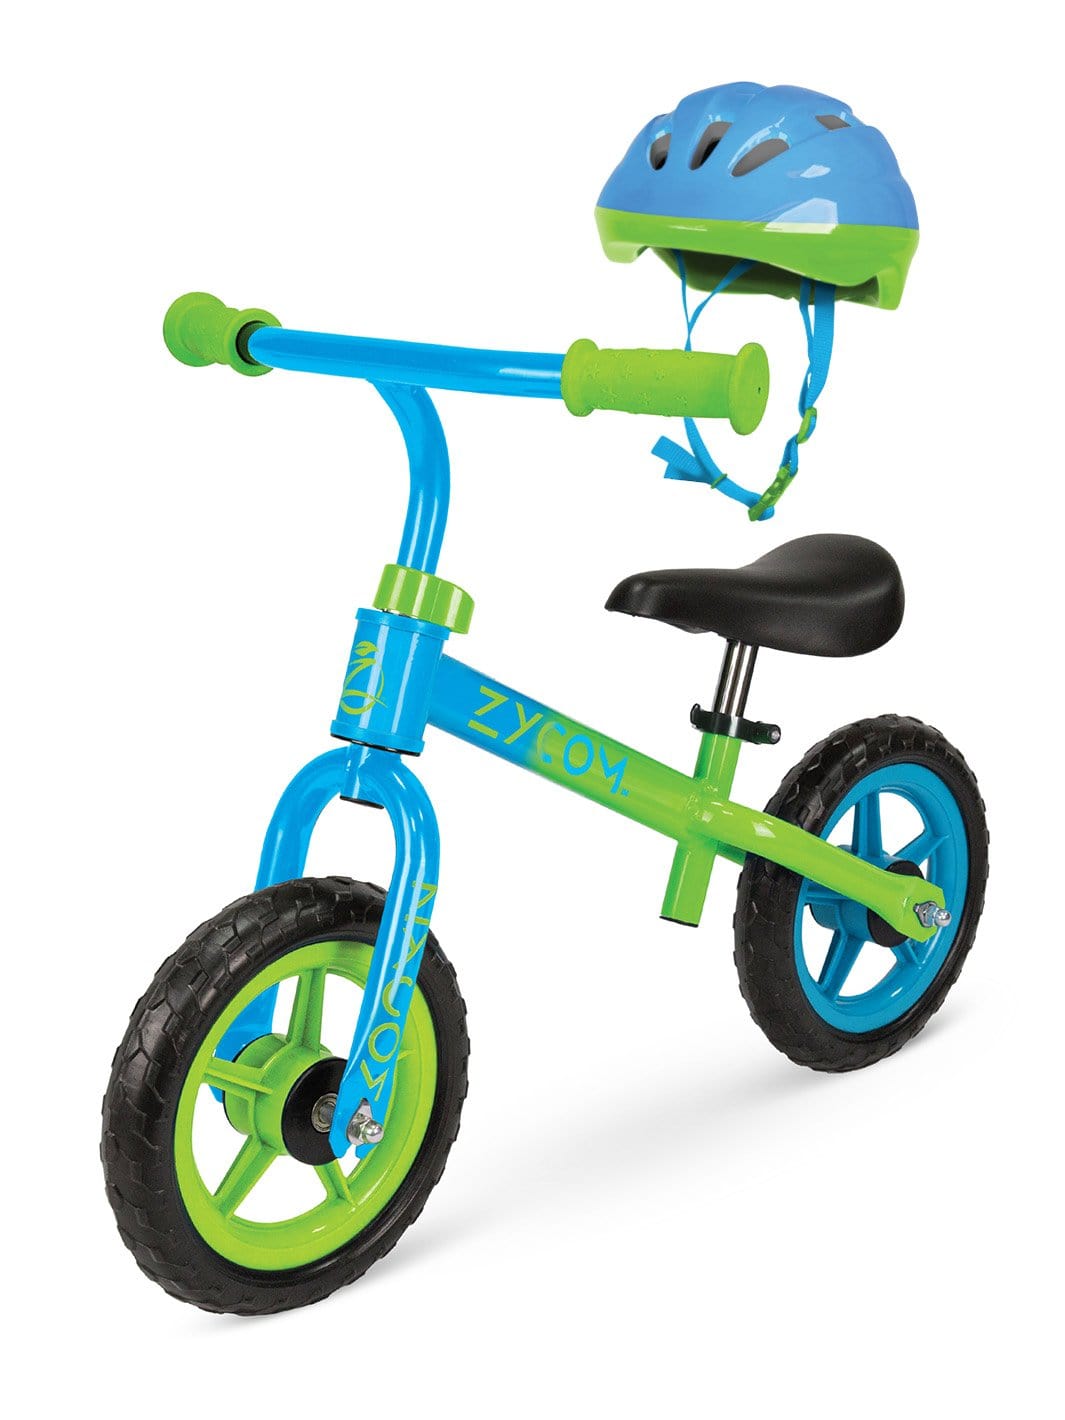 Zycom Zbike Zycomotion Balance Bike Strider Foot to Floor Boys Blue Green Madd